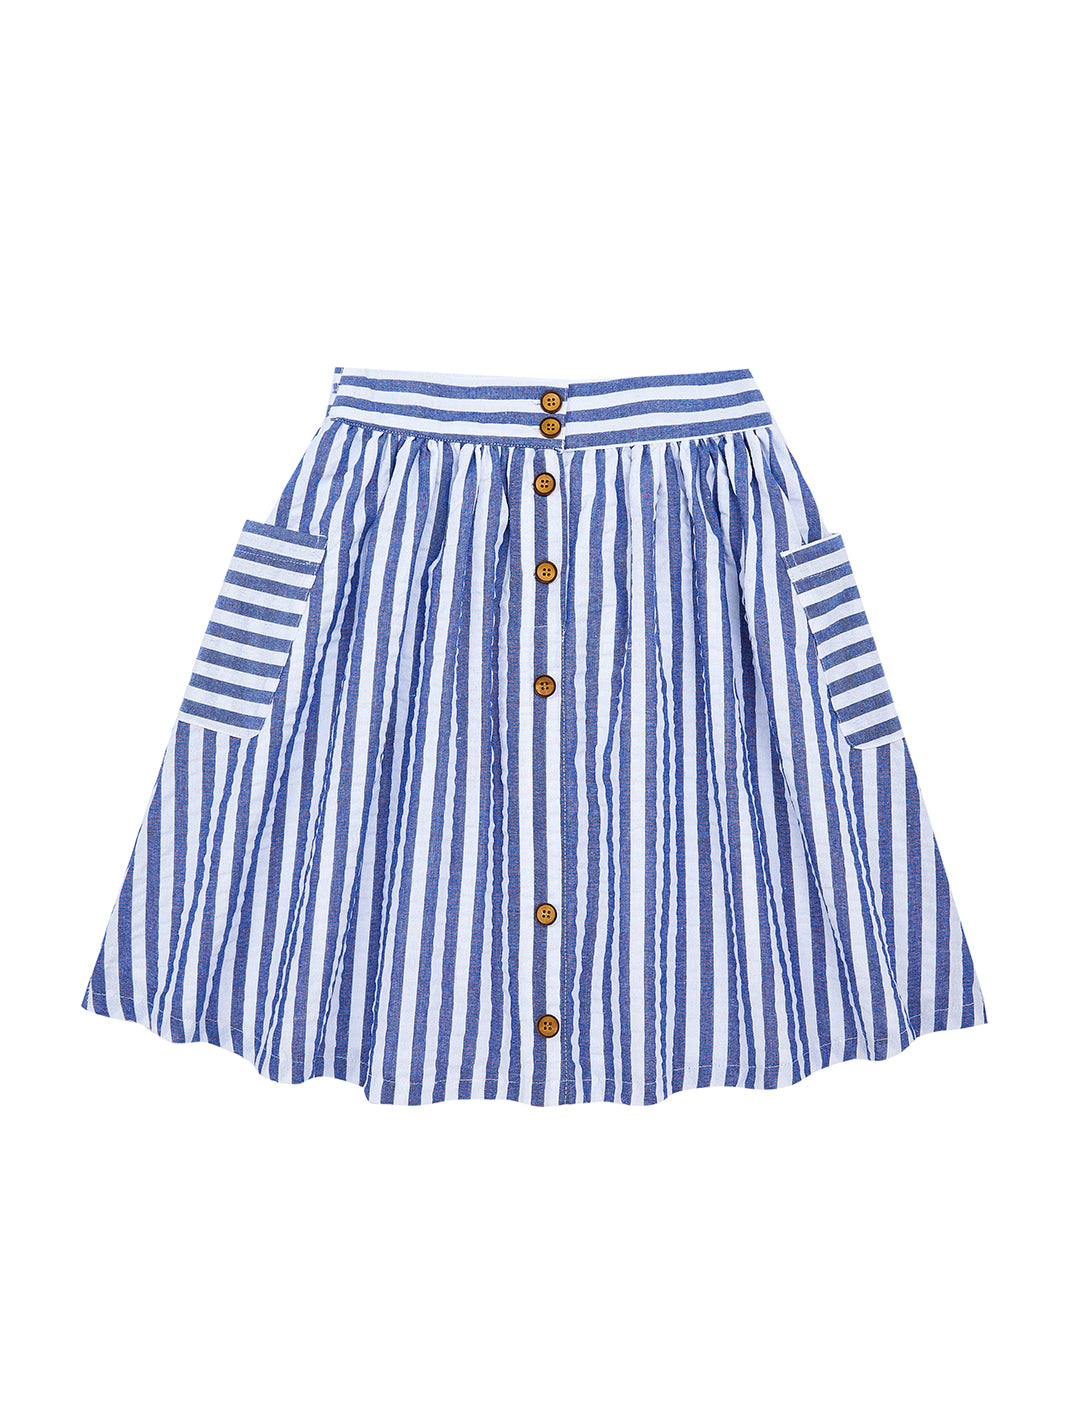 Striped Skirt - White/Royal Blue